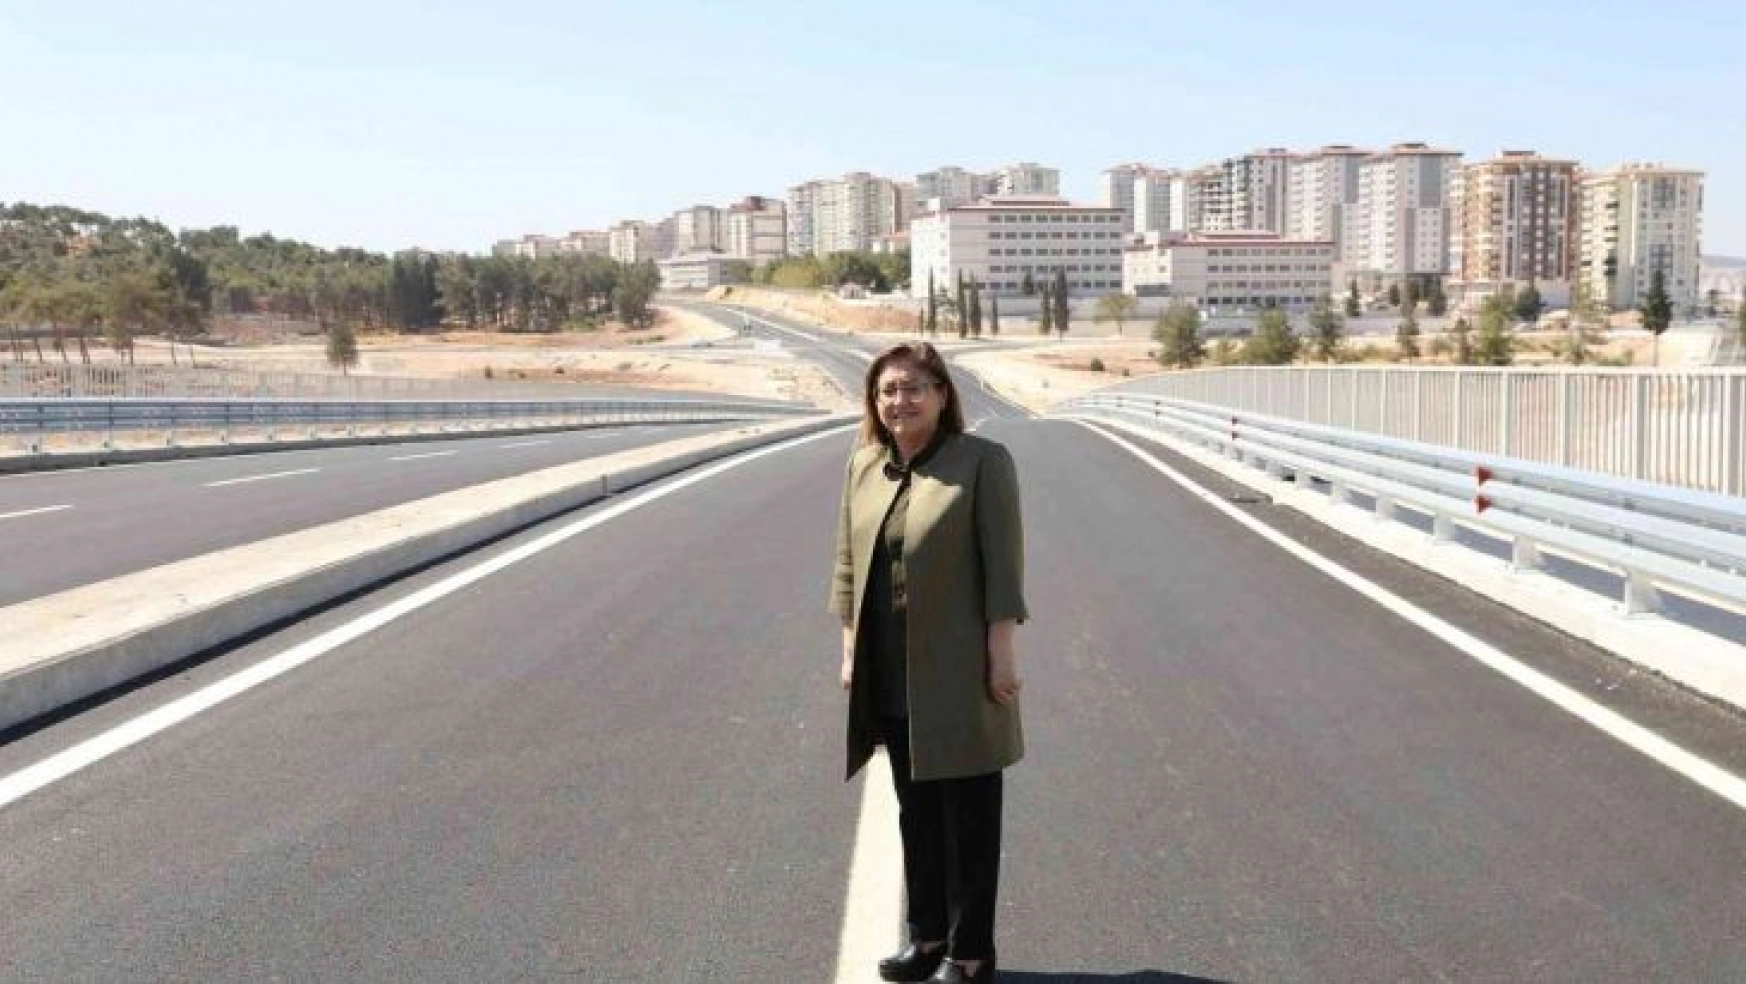 Gaziantep'te yeni yapılan yol kavşaktaki trafik yükünü hafifletecek